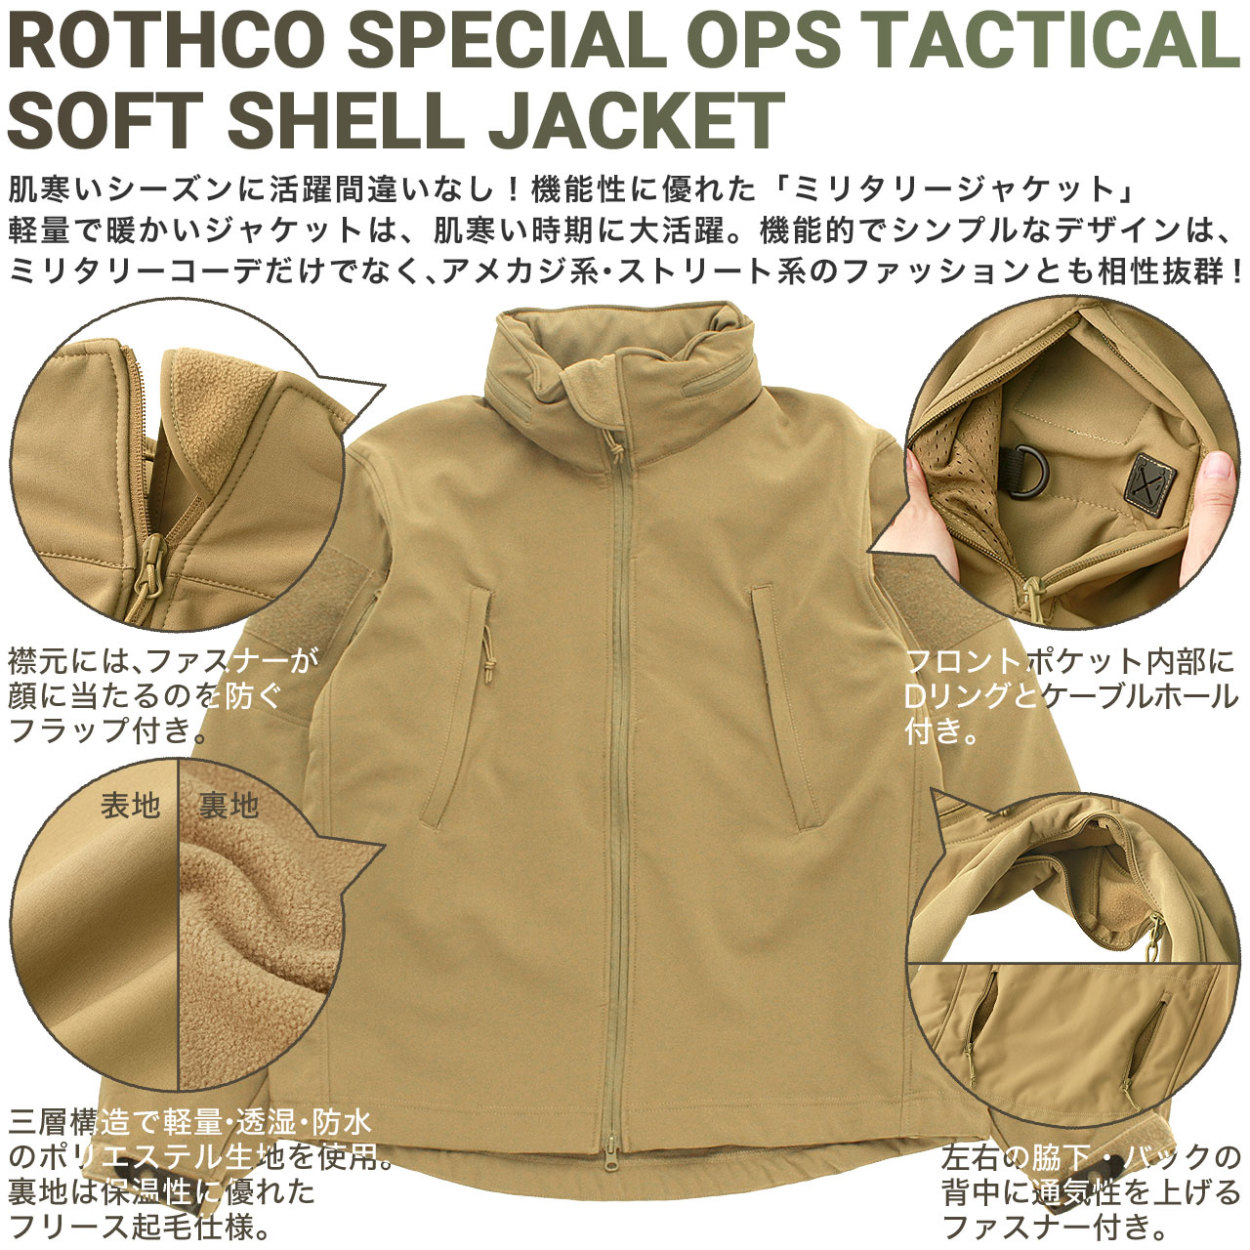 【送料無料】 ロスコ ジャケット メンズ ソフトシェルジャケット 大きいサイズ ROTHCO ジャケット アウター フリース アウトドア キャンプ  ミリタリー USAモデル